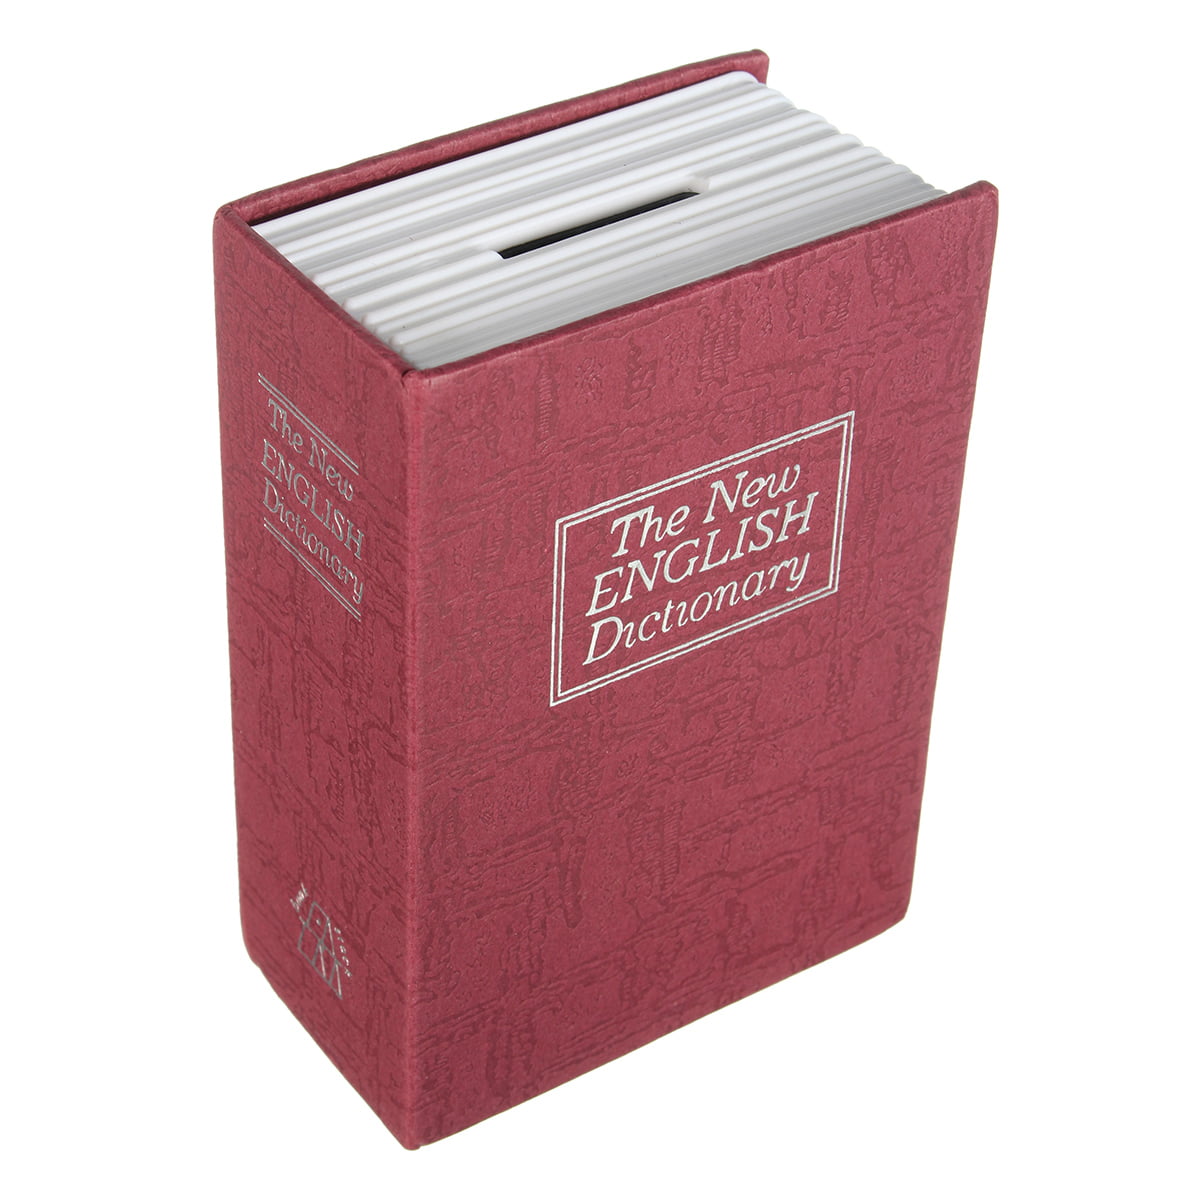 Locked Receiving Box Dictionary Hidden Book Safe Lock Secret Hidden Box A6Z5 